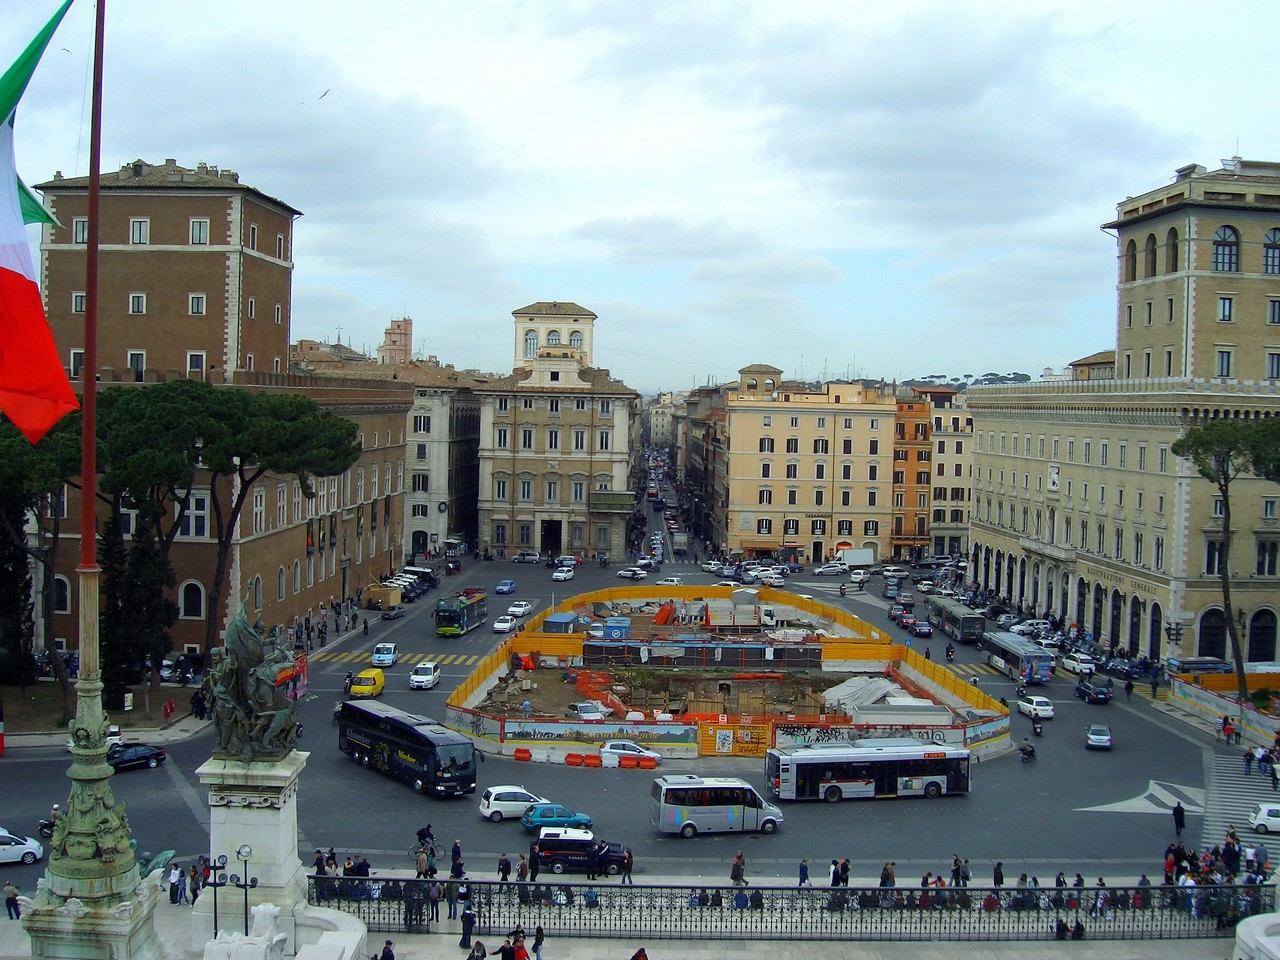 A Piazza Venezia